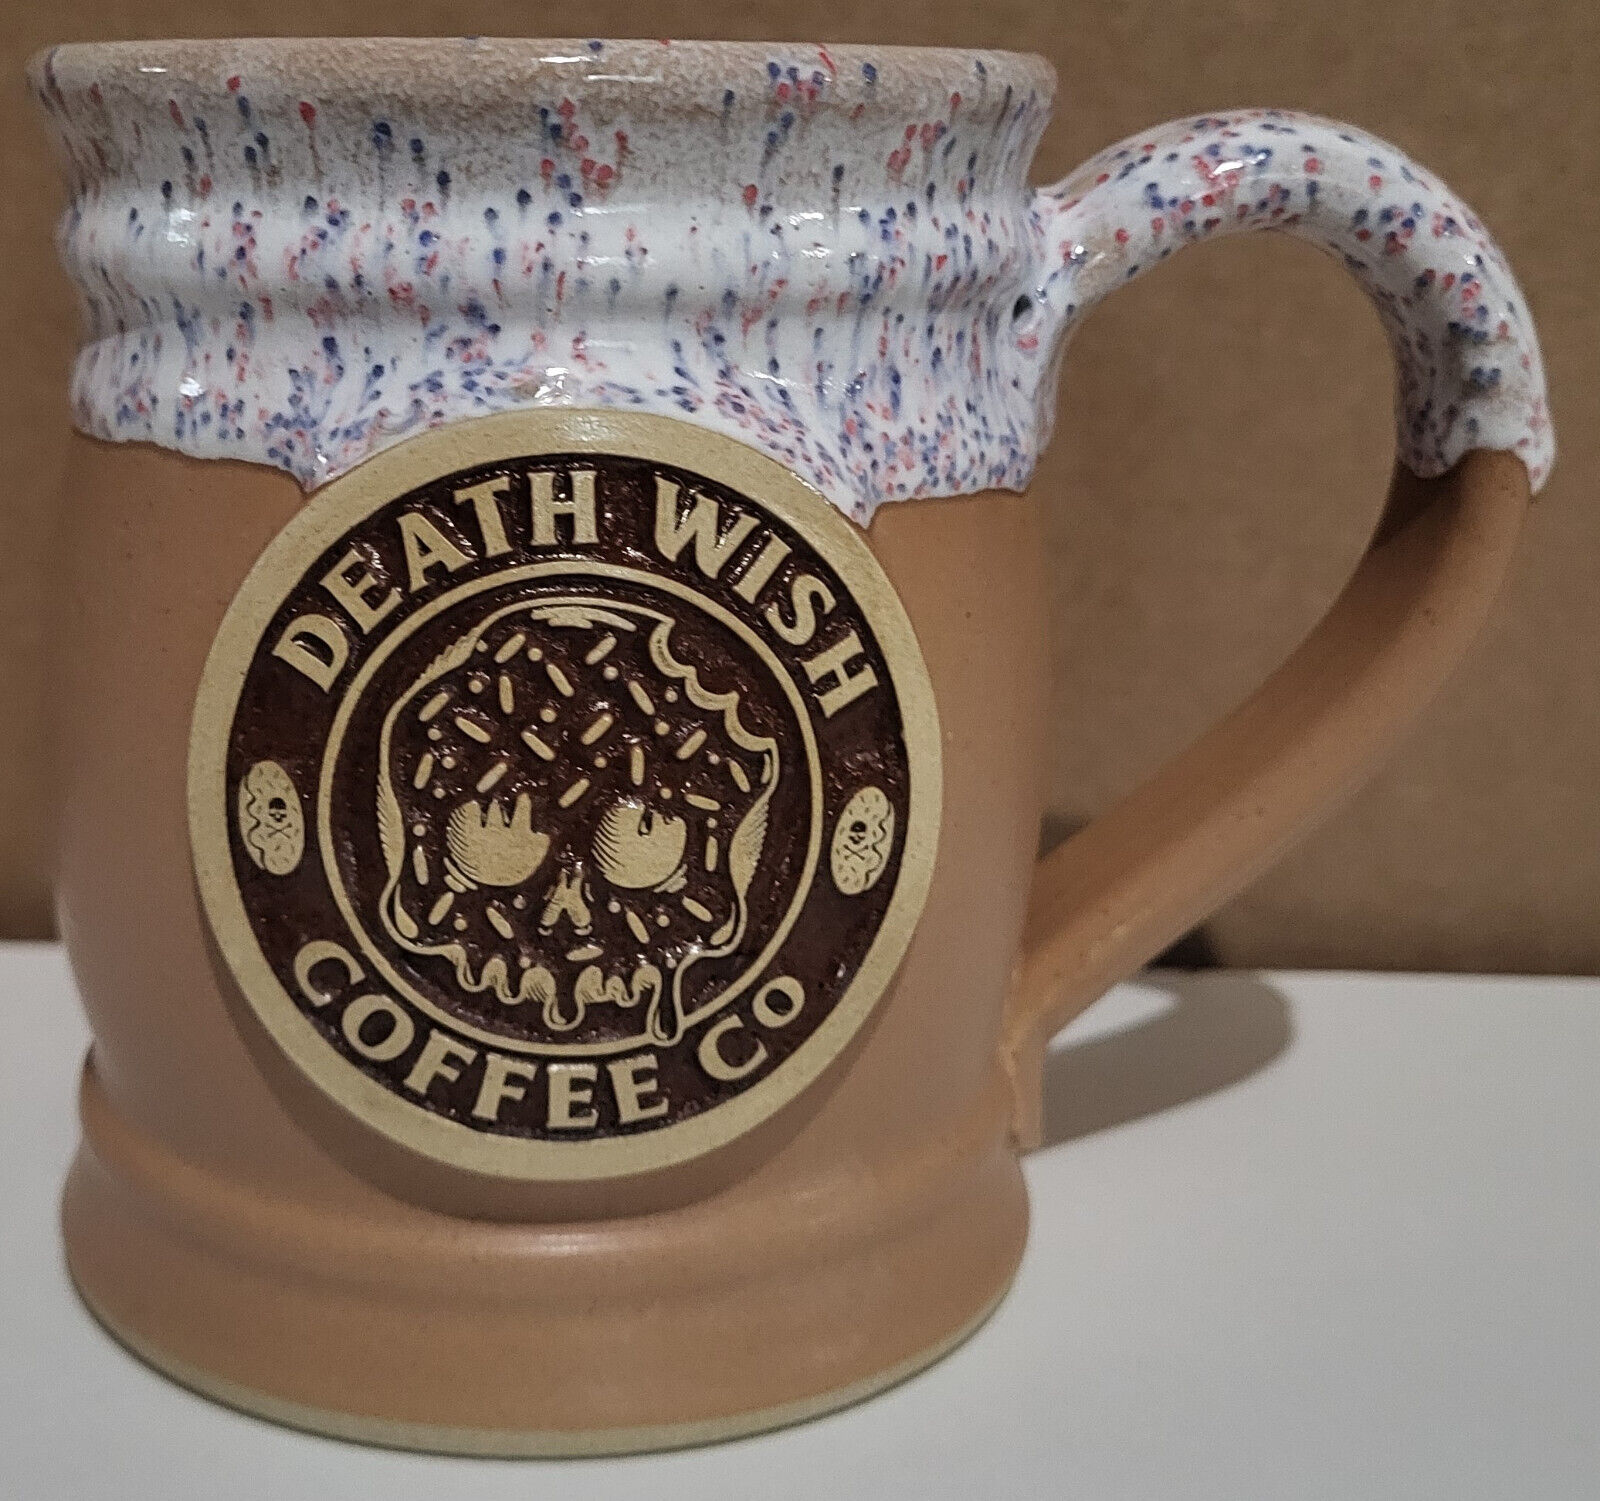 Death Wish Ceramic Coffee Mug - Donut Day 2021 - 1411/3500 - limited Edition